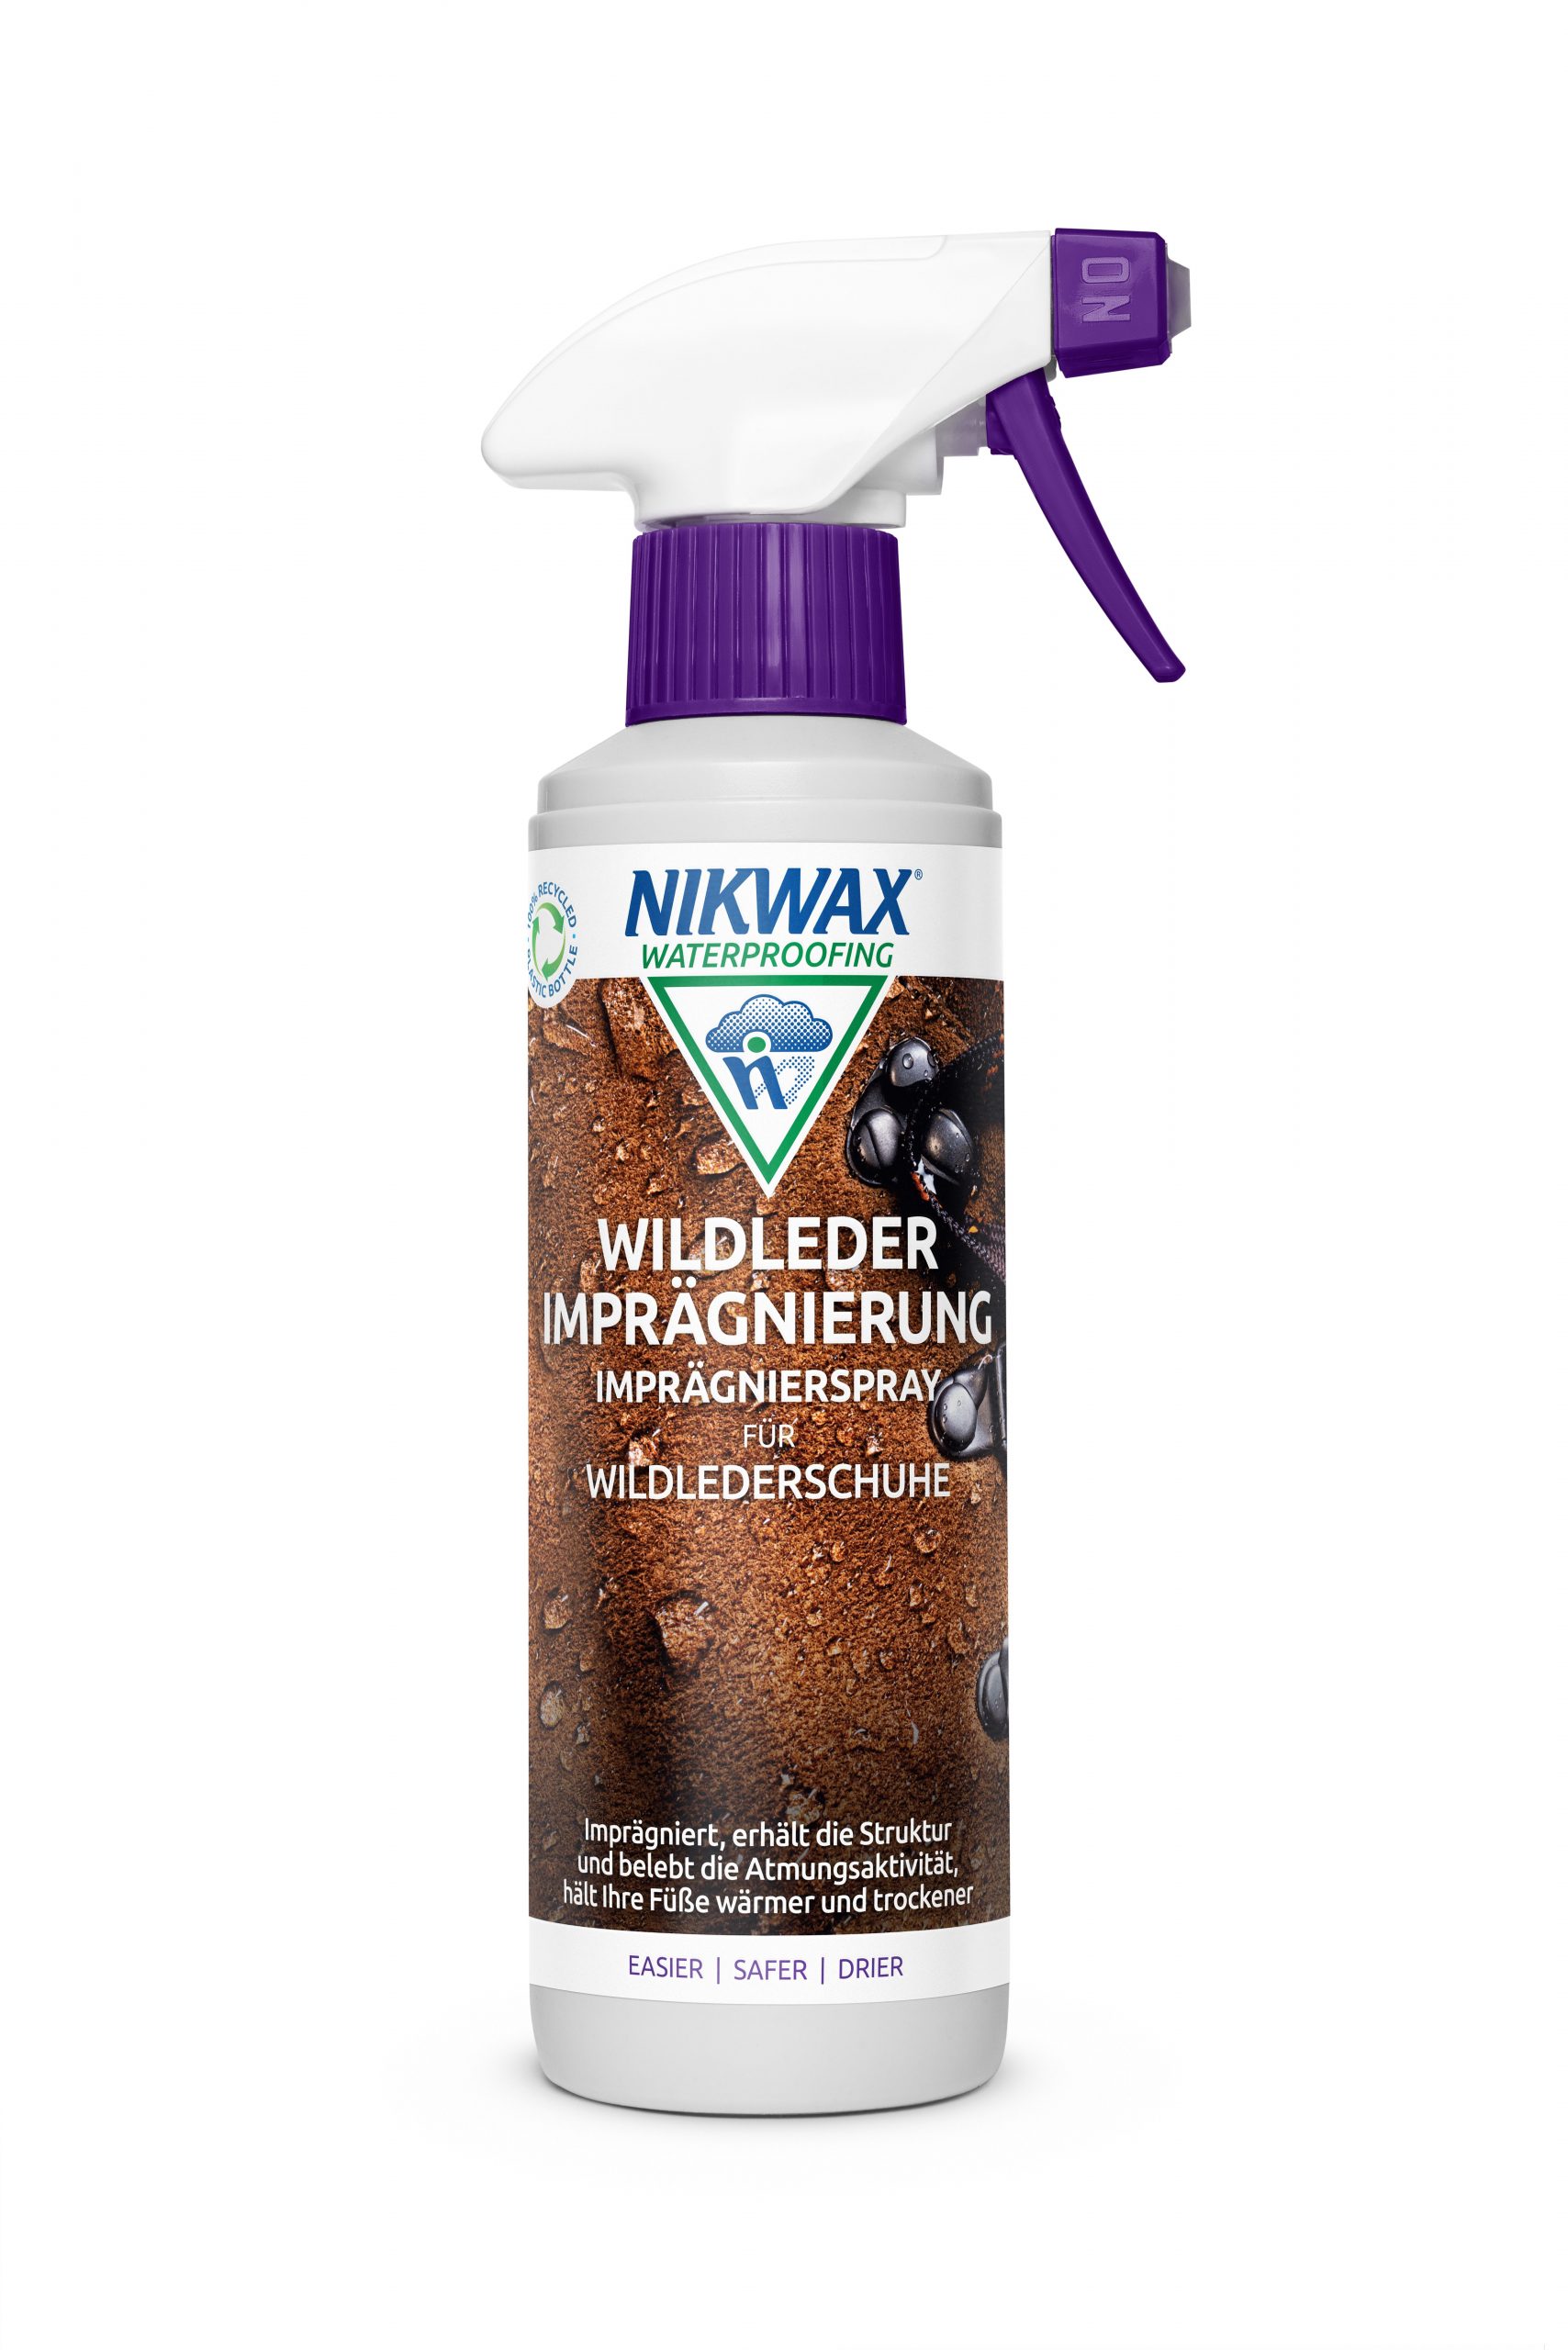 Nikwax Wildleder Imprägnierung Spray-On 300ml ♥